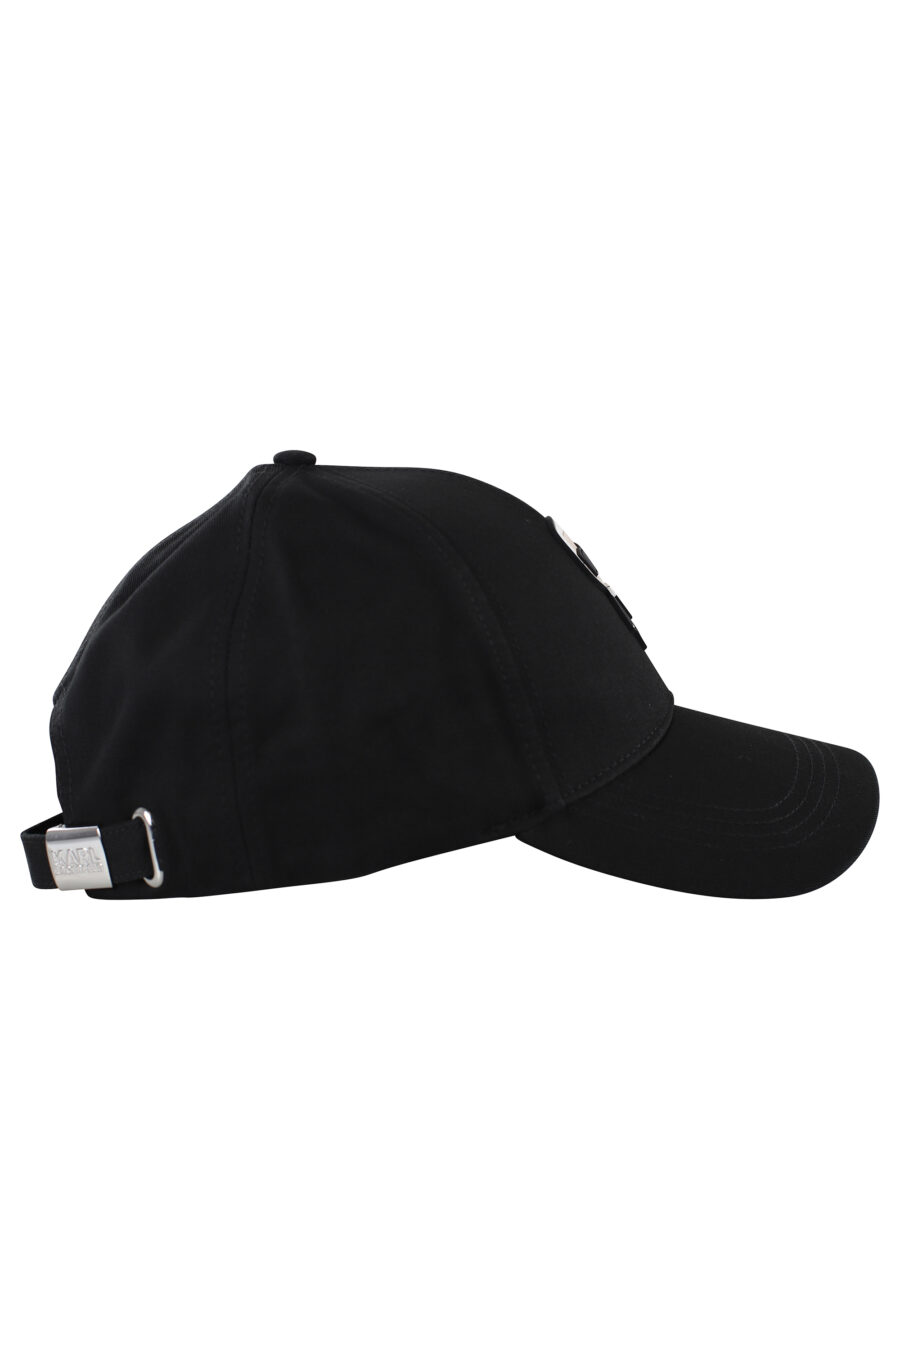 Gorra negra con logo de goma grande - IMG 7075